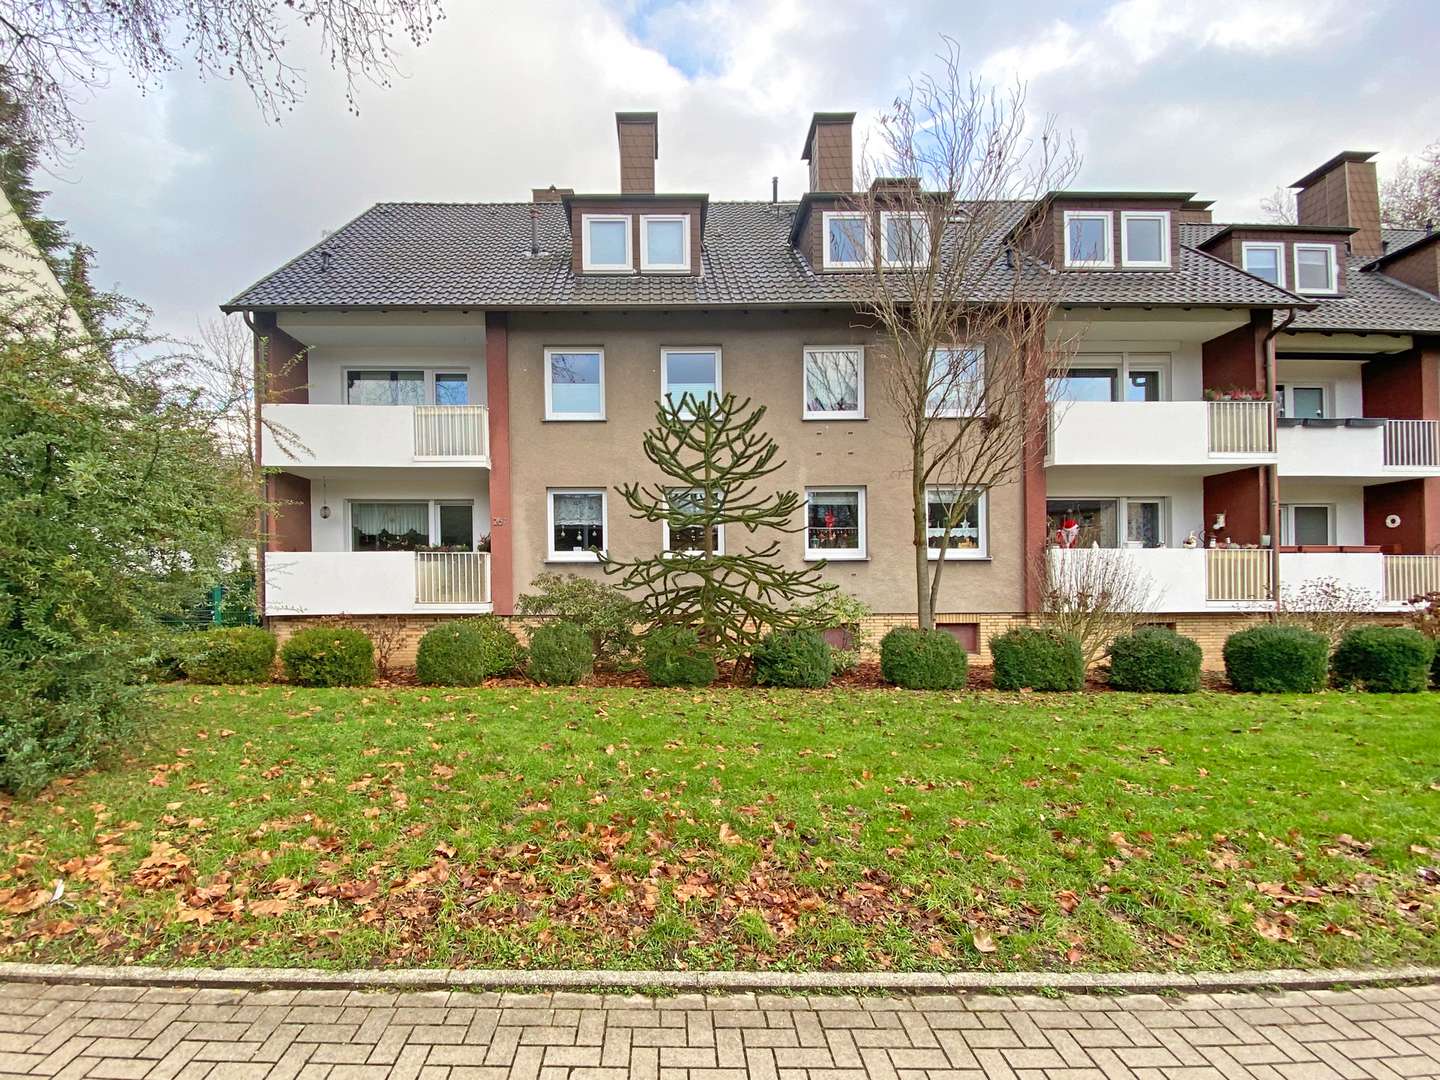 Vorderansicht - Dachgeschosswohnung in 44892 Bochum mit 80m² günstig kaufen